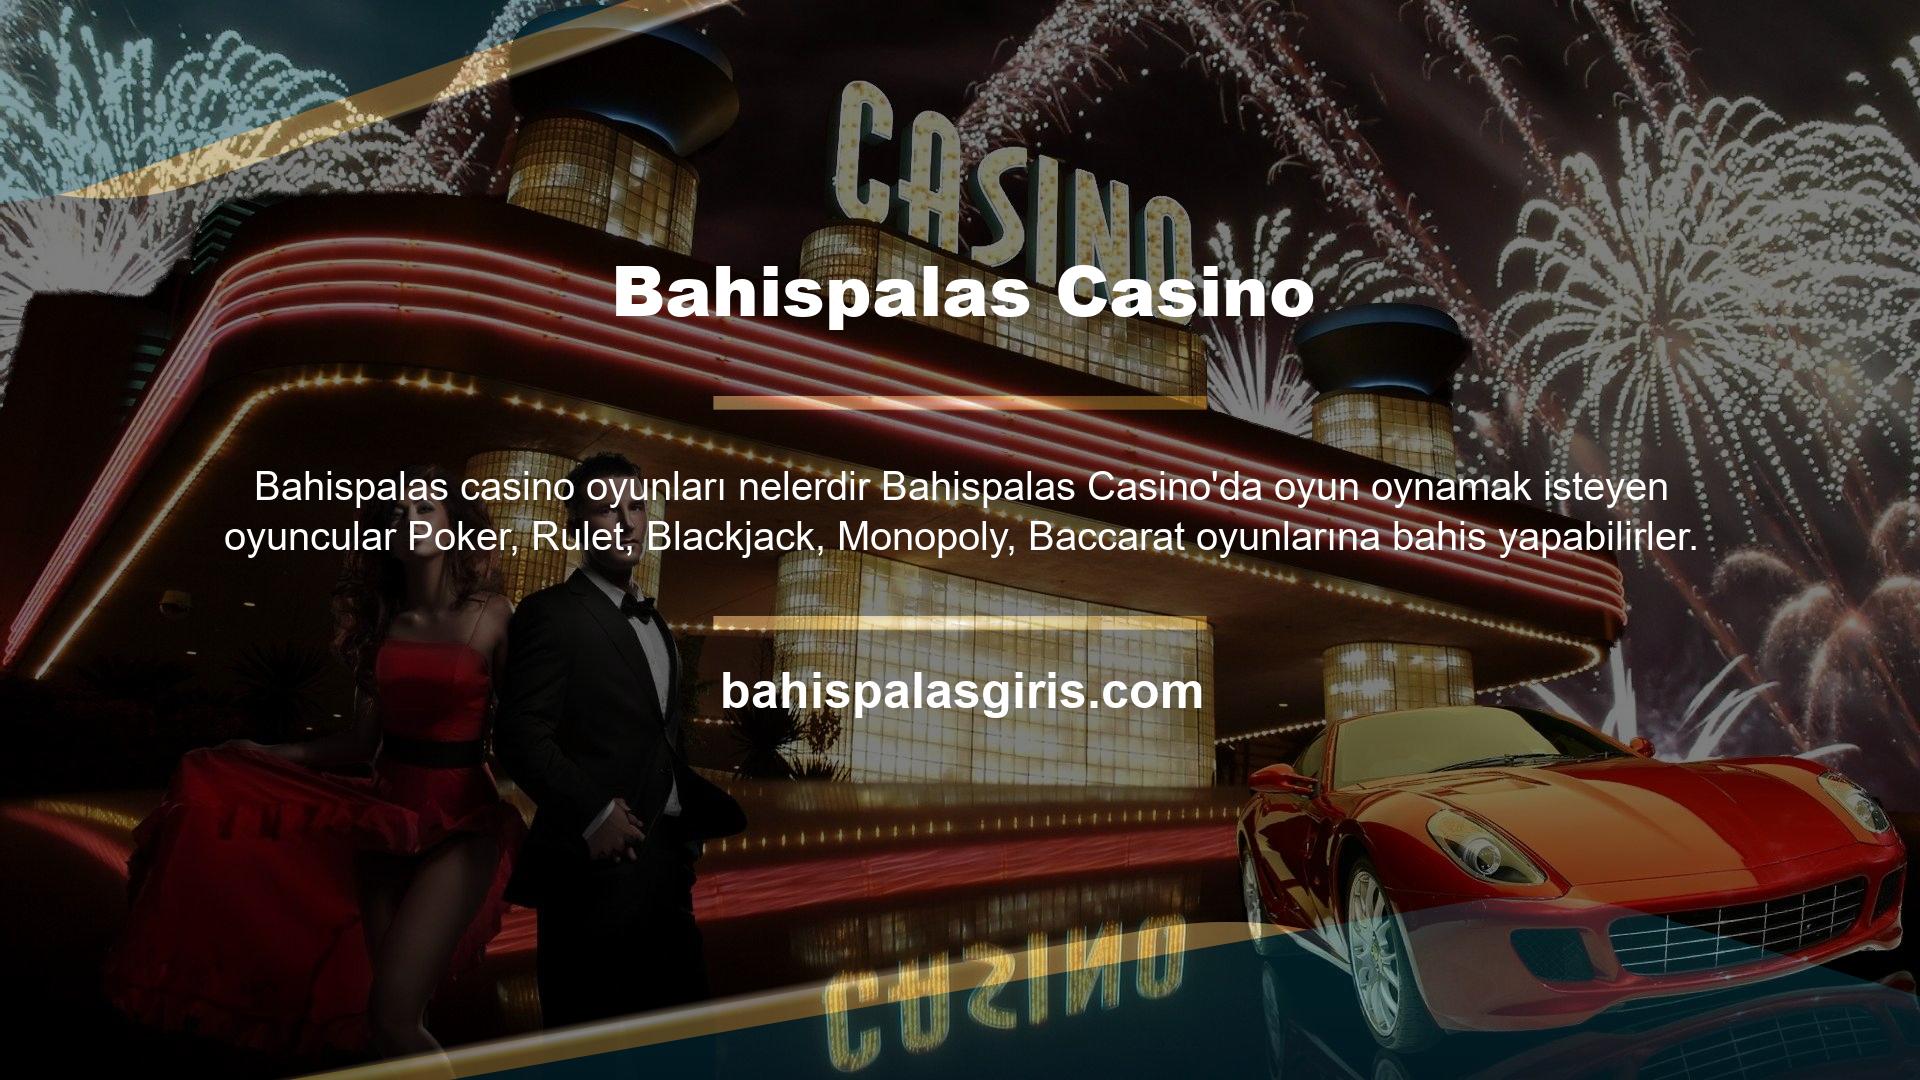 Bahispalas casino oyunları, oyuncuları gerçek bir casino salonunda bir araya getirir